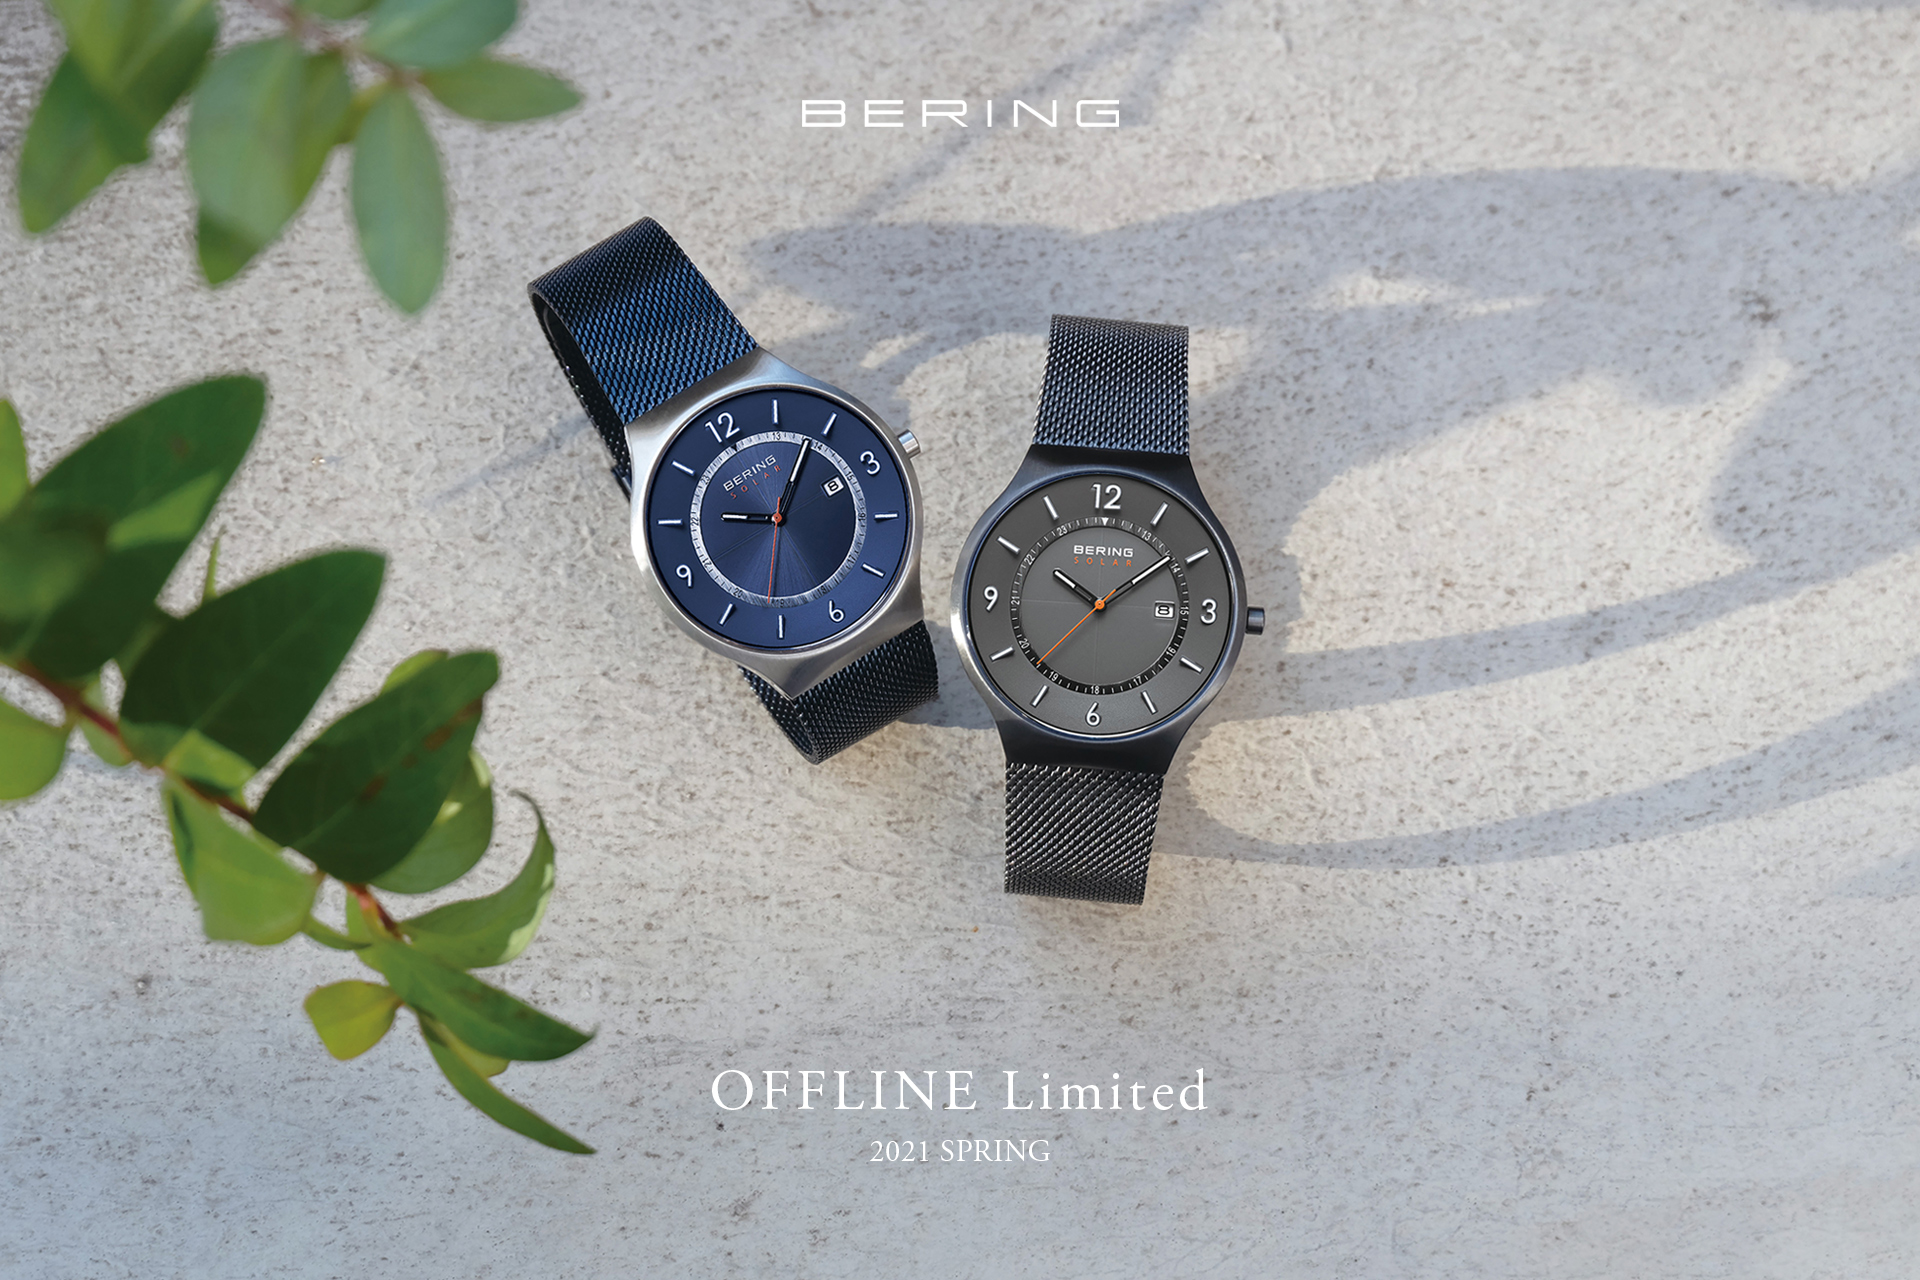 BERING OFFLINE Limited 直営店限定 2021.2.5 発売 | BERING 